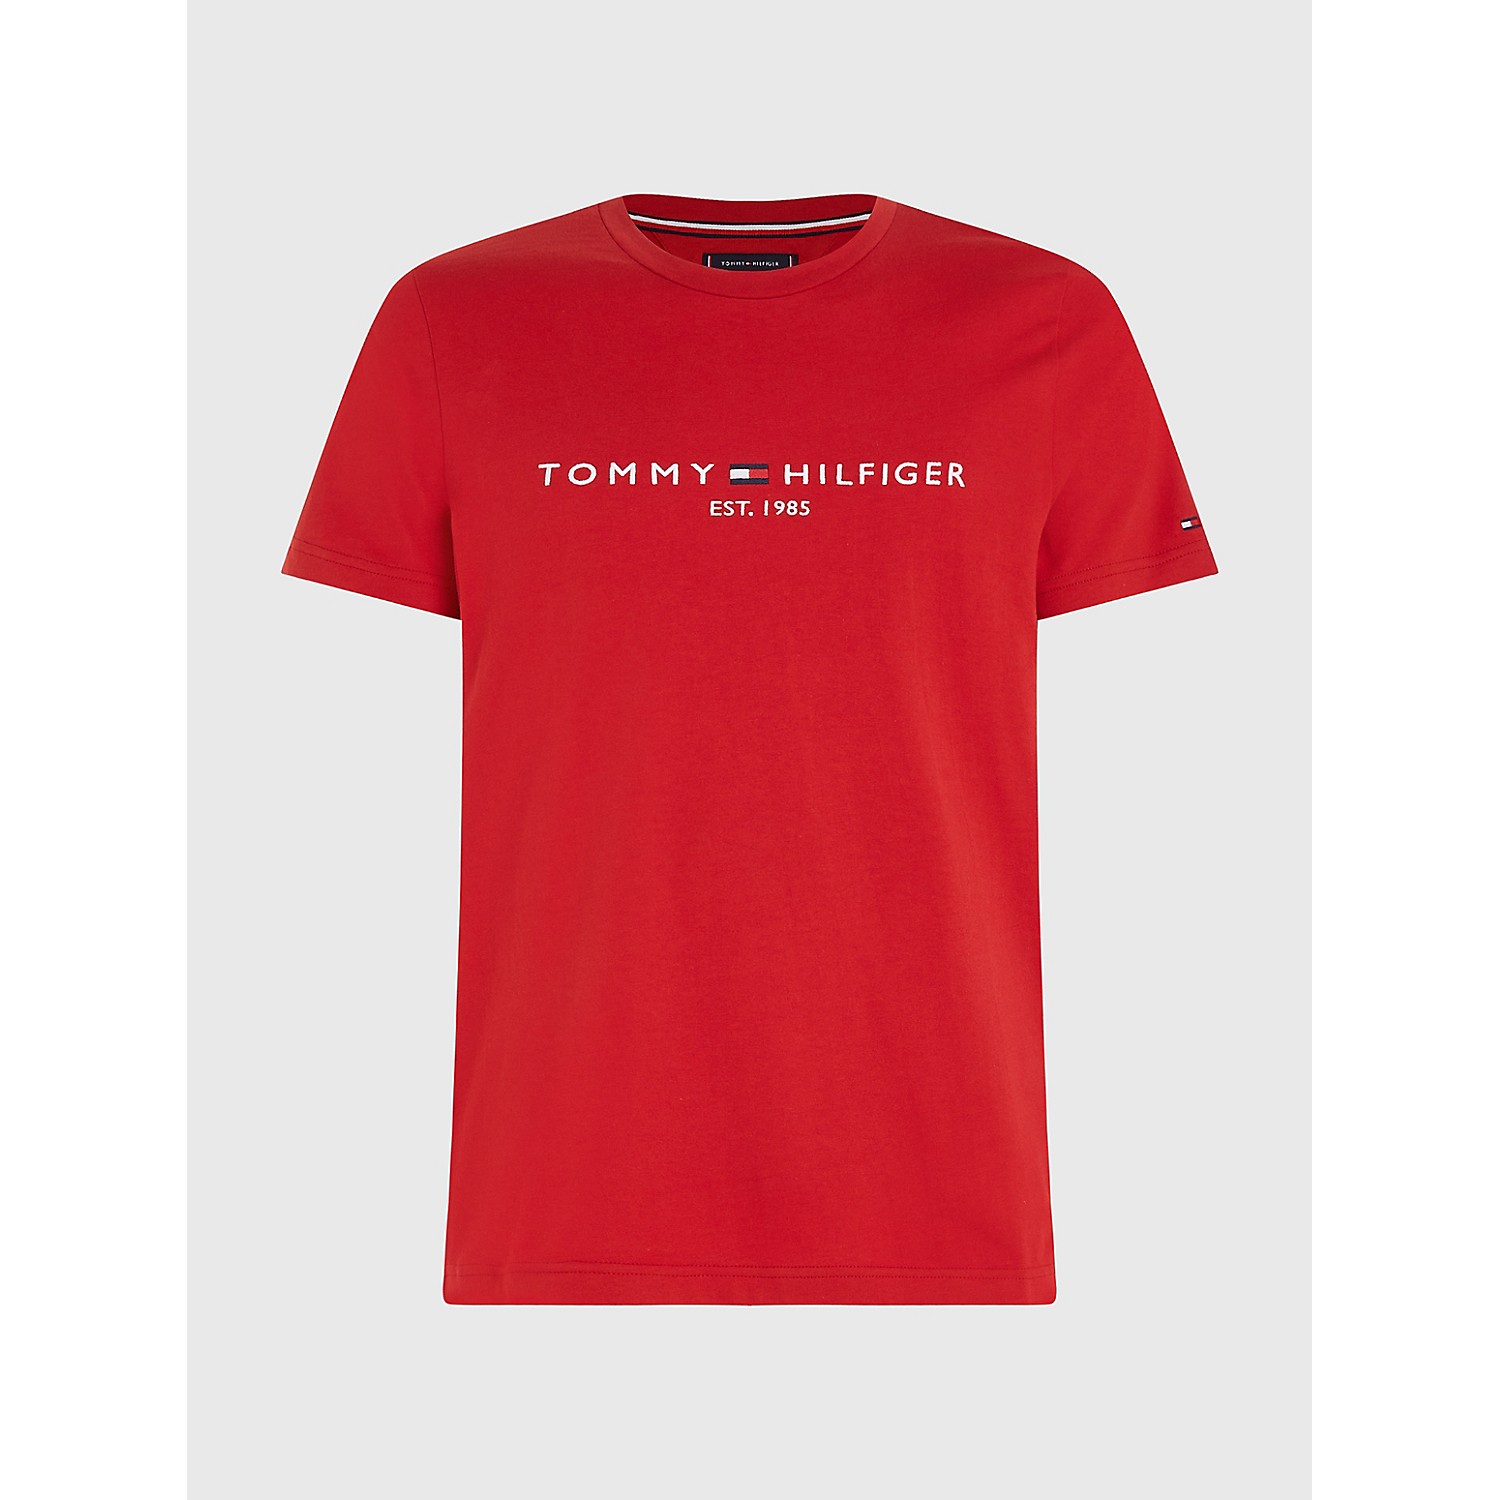 TOMMY HILFIGER Big and Tall Hilfiger Logo T-Shirt